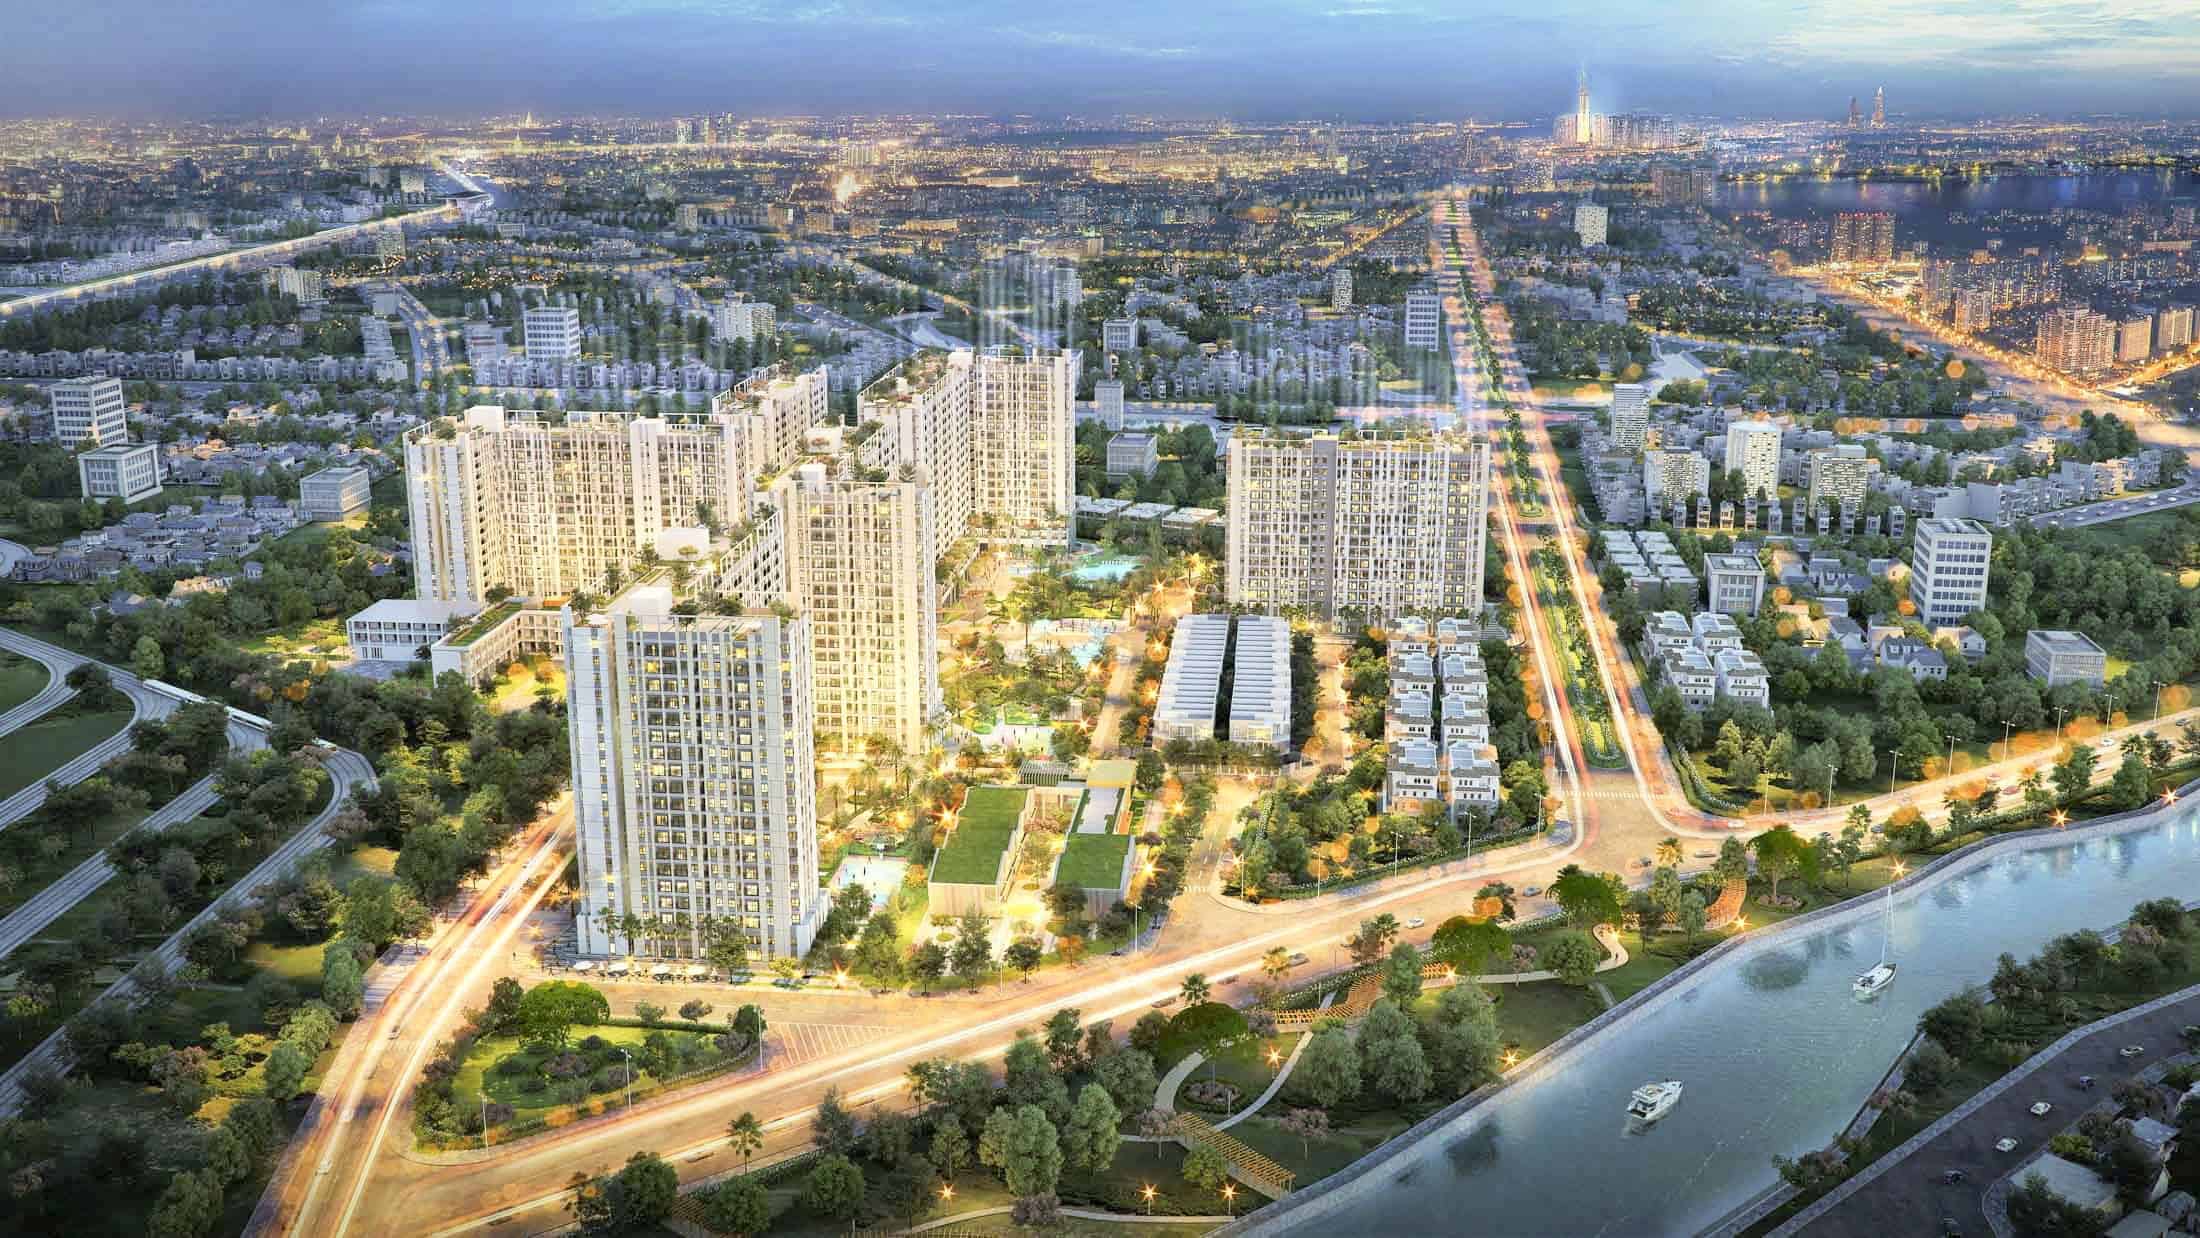 Astral City còn là dự án căn hộ được đặt nhiều kỳ vọng khi đắc địa tọa lạc tại thành phố tiềm năng Thuận An của tỉnh Bình Dương và được các chuyên gia dự báo về sự phát triển không ngừng trong tương lai. 